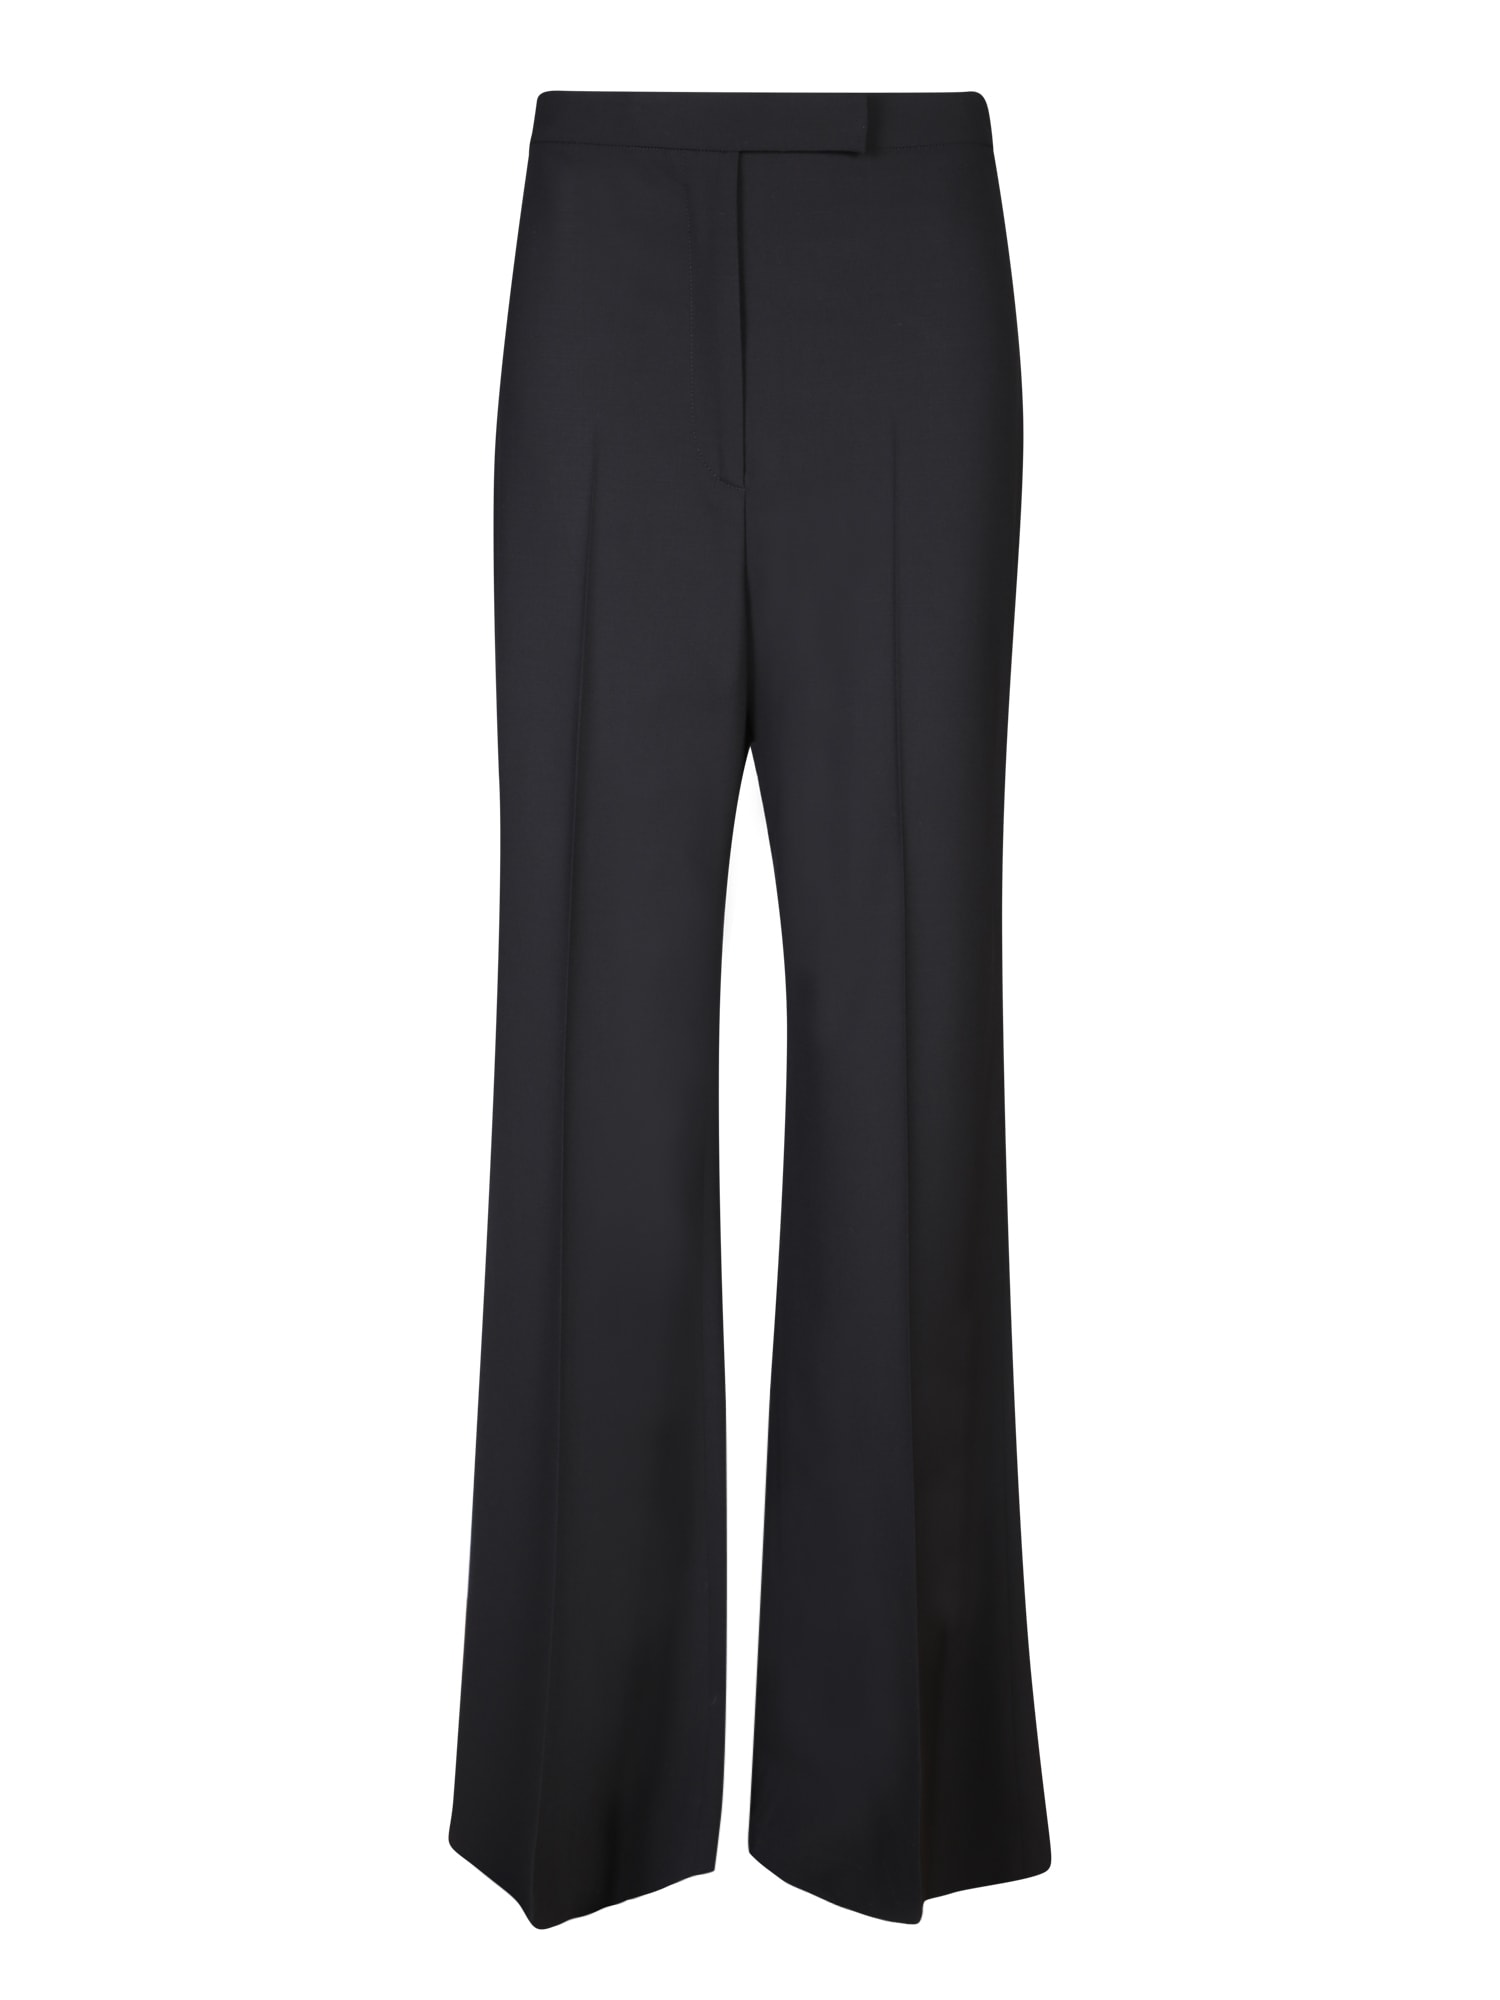 Shop Lardini Black Tailored Trousers